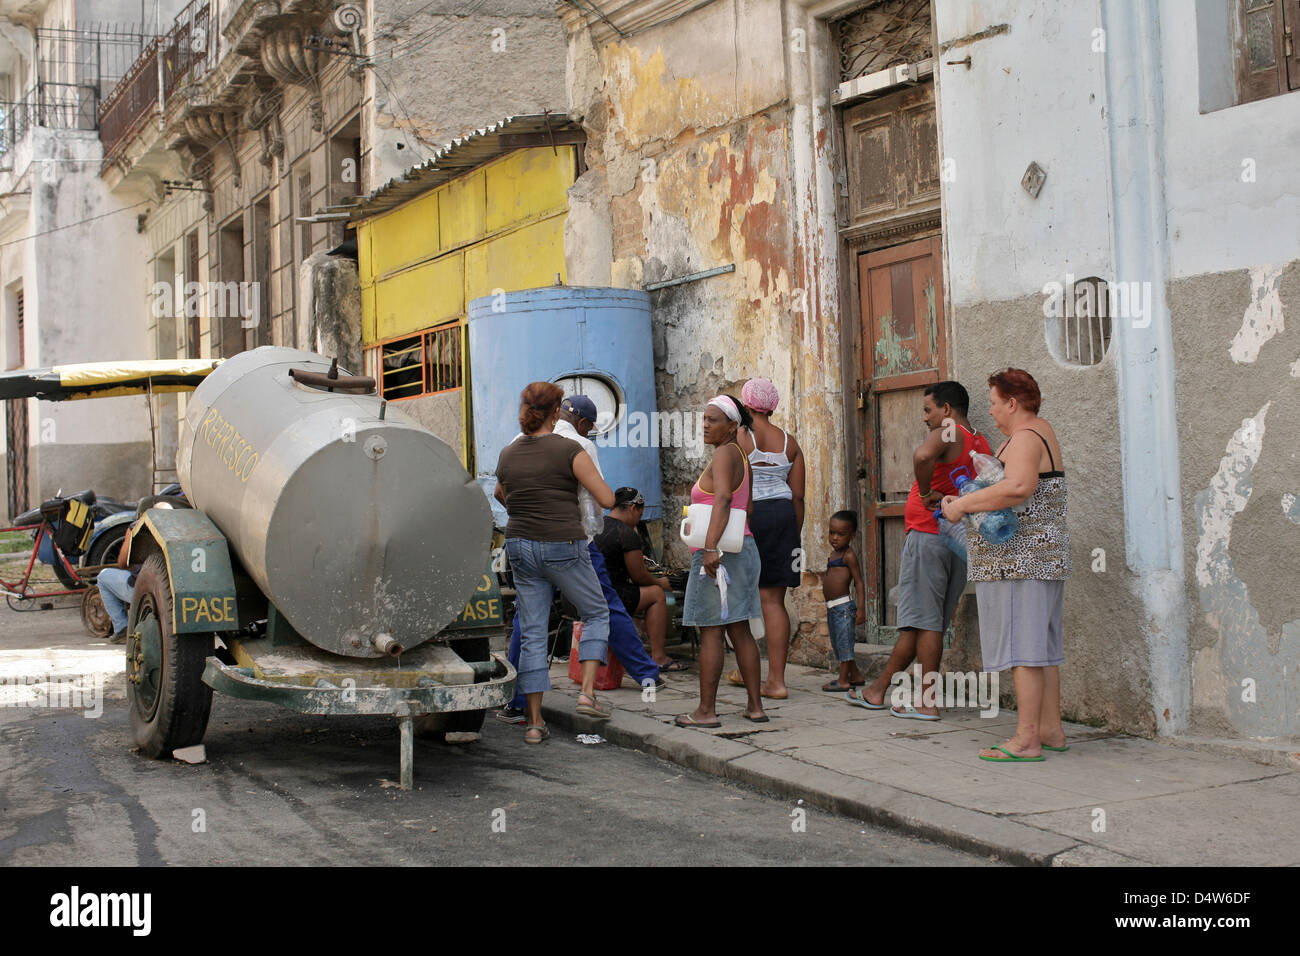 Eine Gruppe von Menschen steht in einem Wassertank für Trinkwasser in Havanna, Kuba, 21. September 2009. Foto: Fredrik von Erichsen Stockfoto